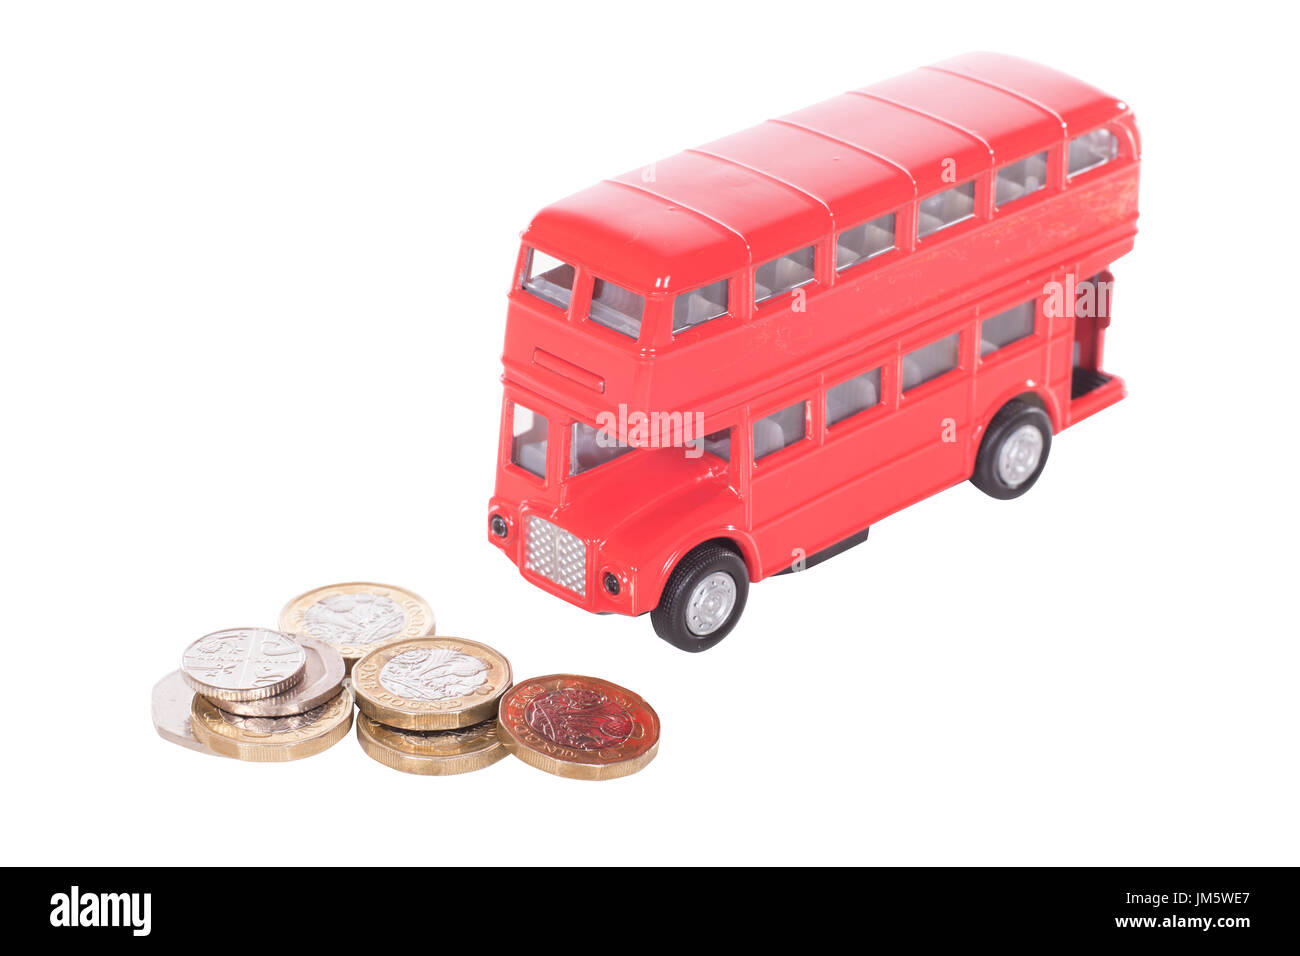 Pile de UK L'argent comptant dans les coins avec un modèle de bus à impériale rouge dans un concept du coût des transports publics et des déplacements Banque D'Images